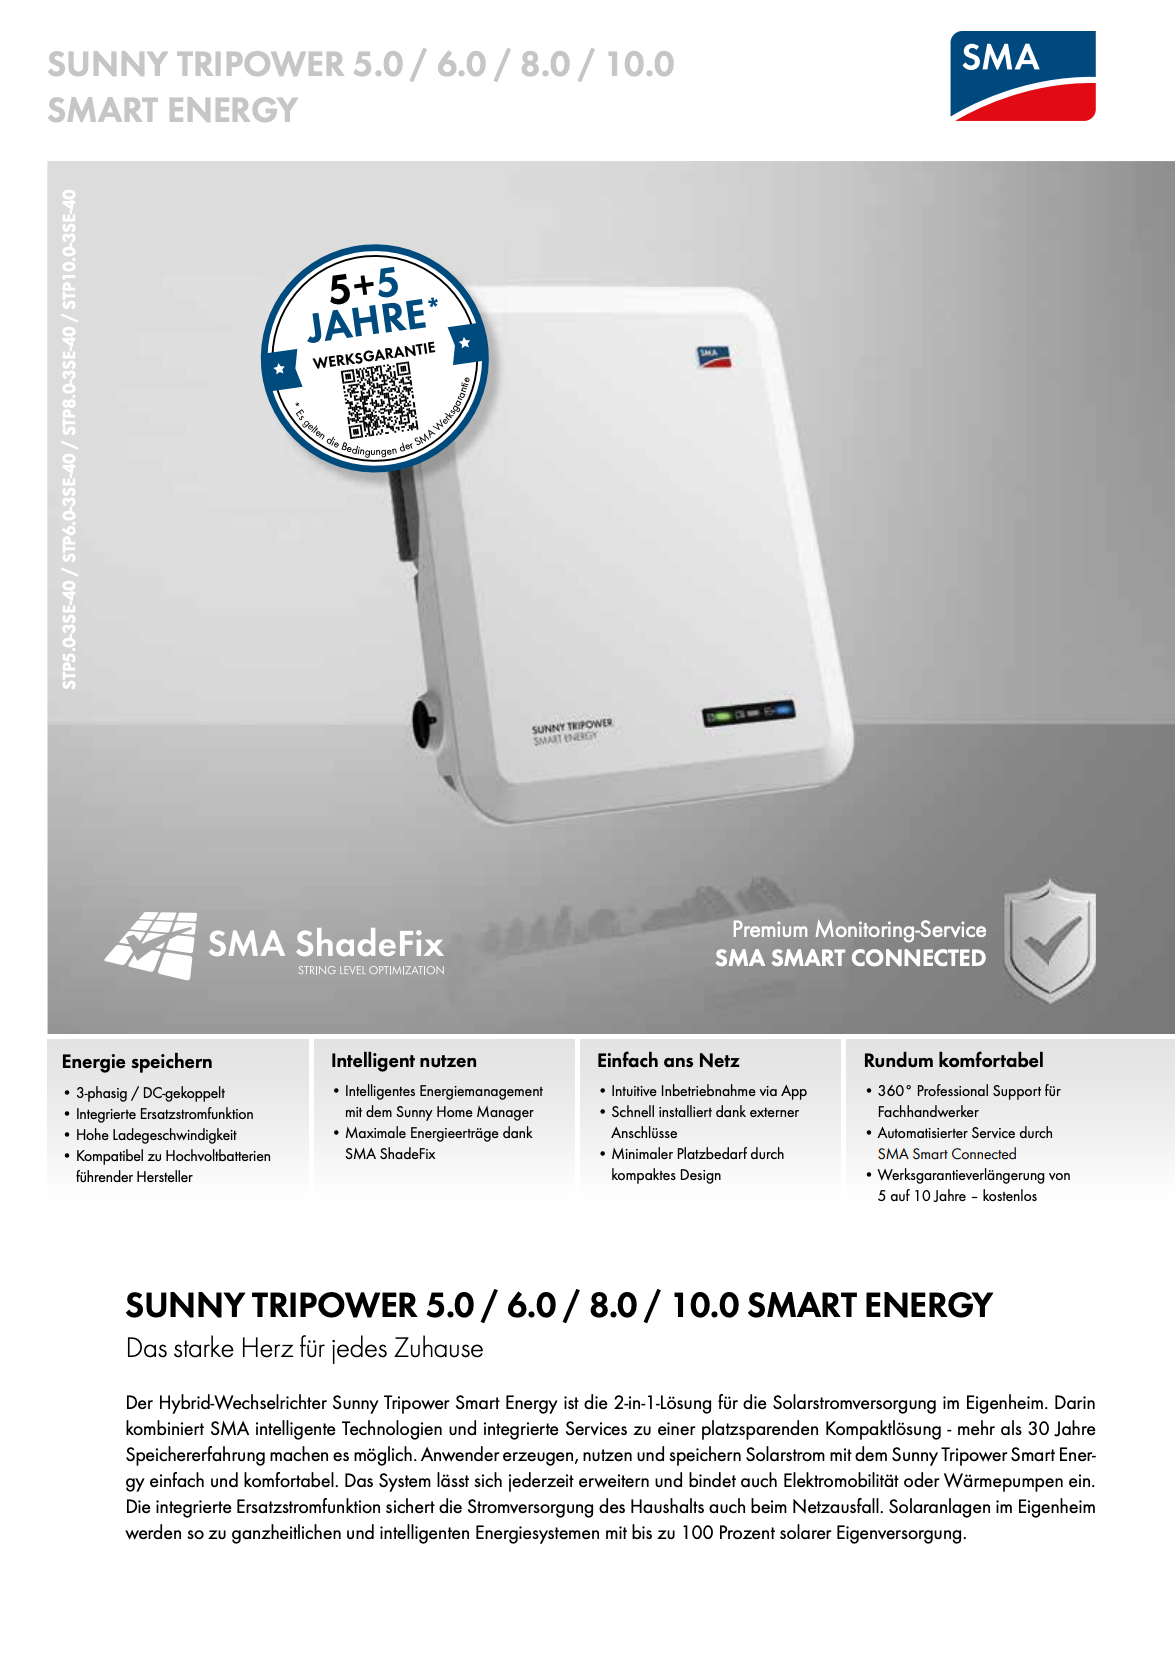 SMA Hybridwechselrichter STP Smart Energy - Varianten 5 - 10 kW